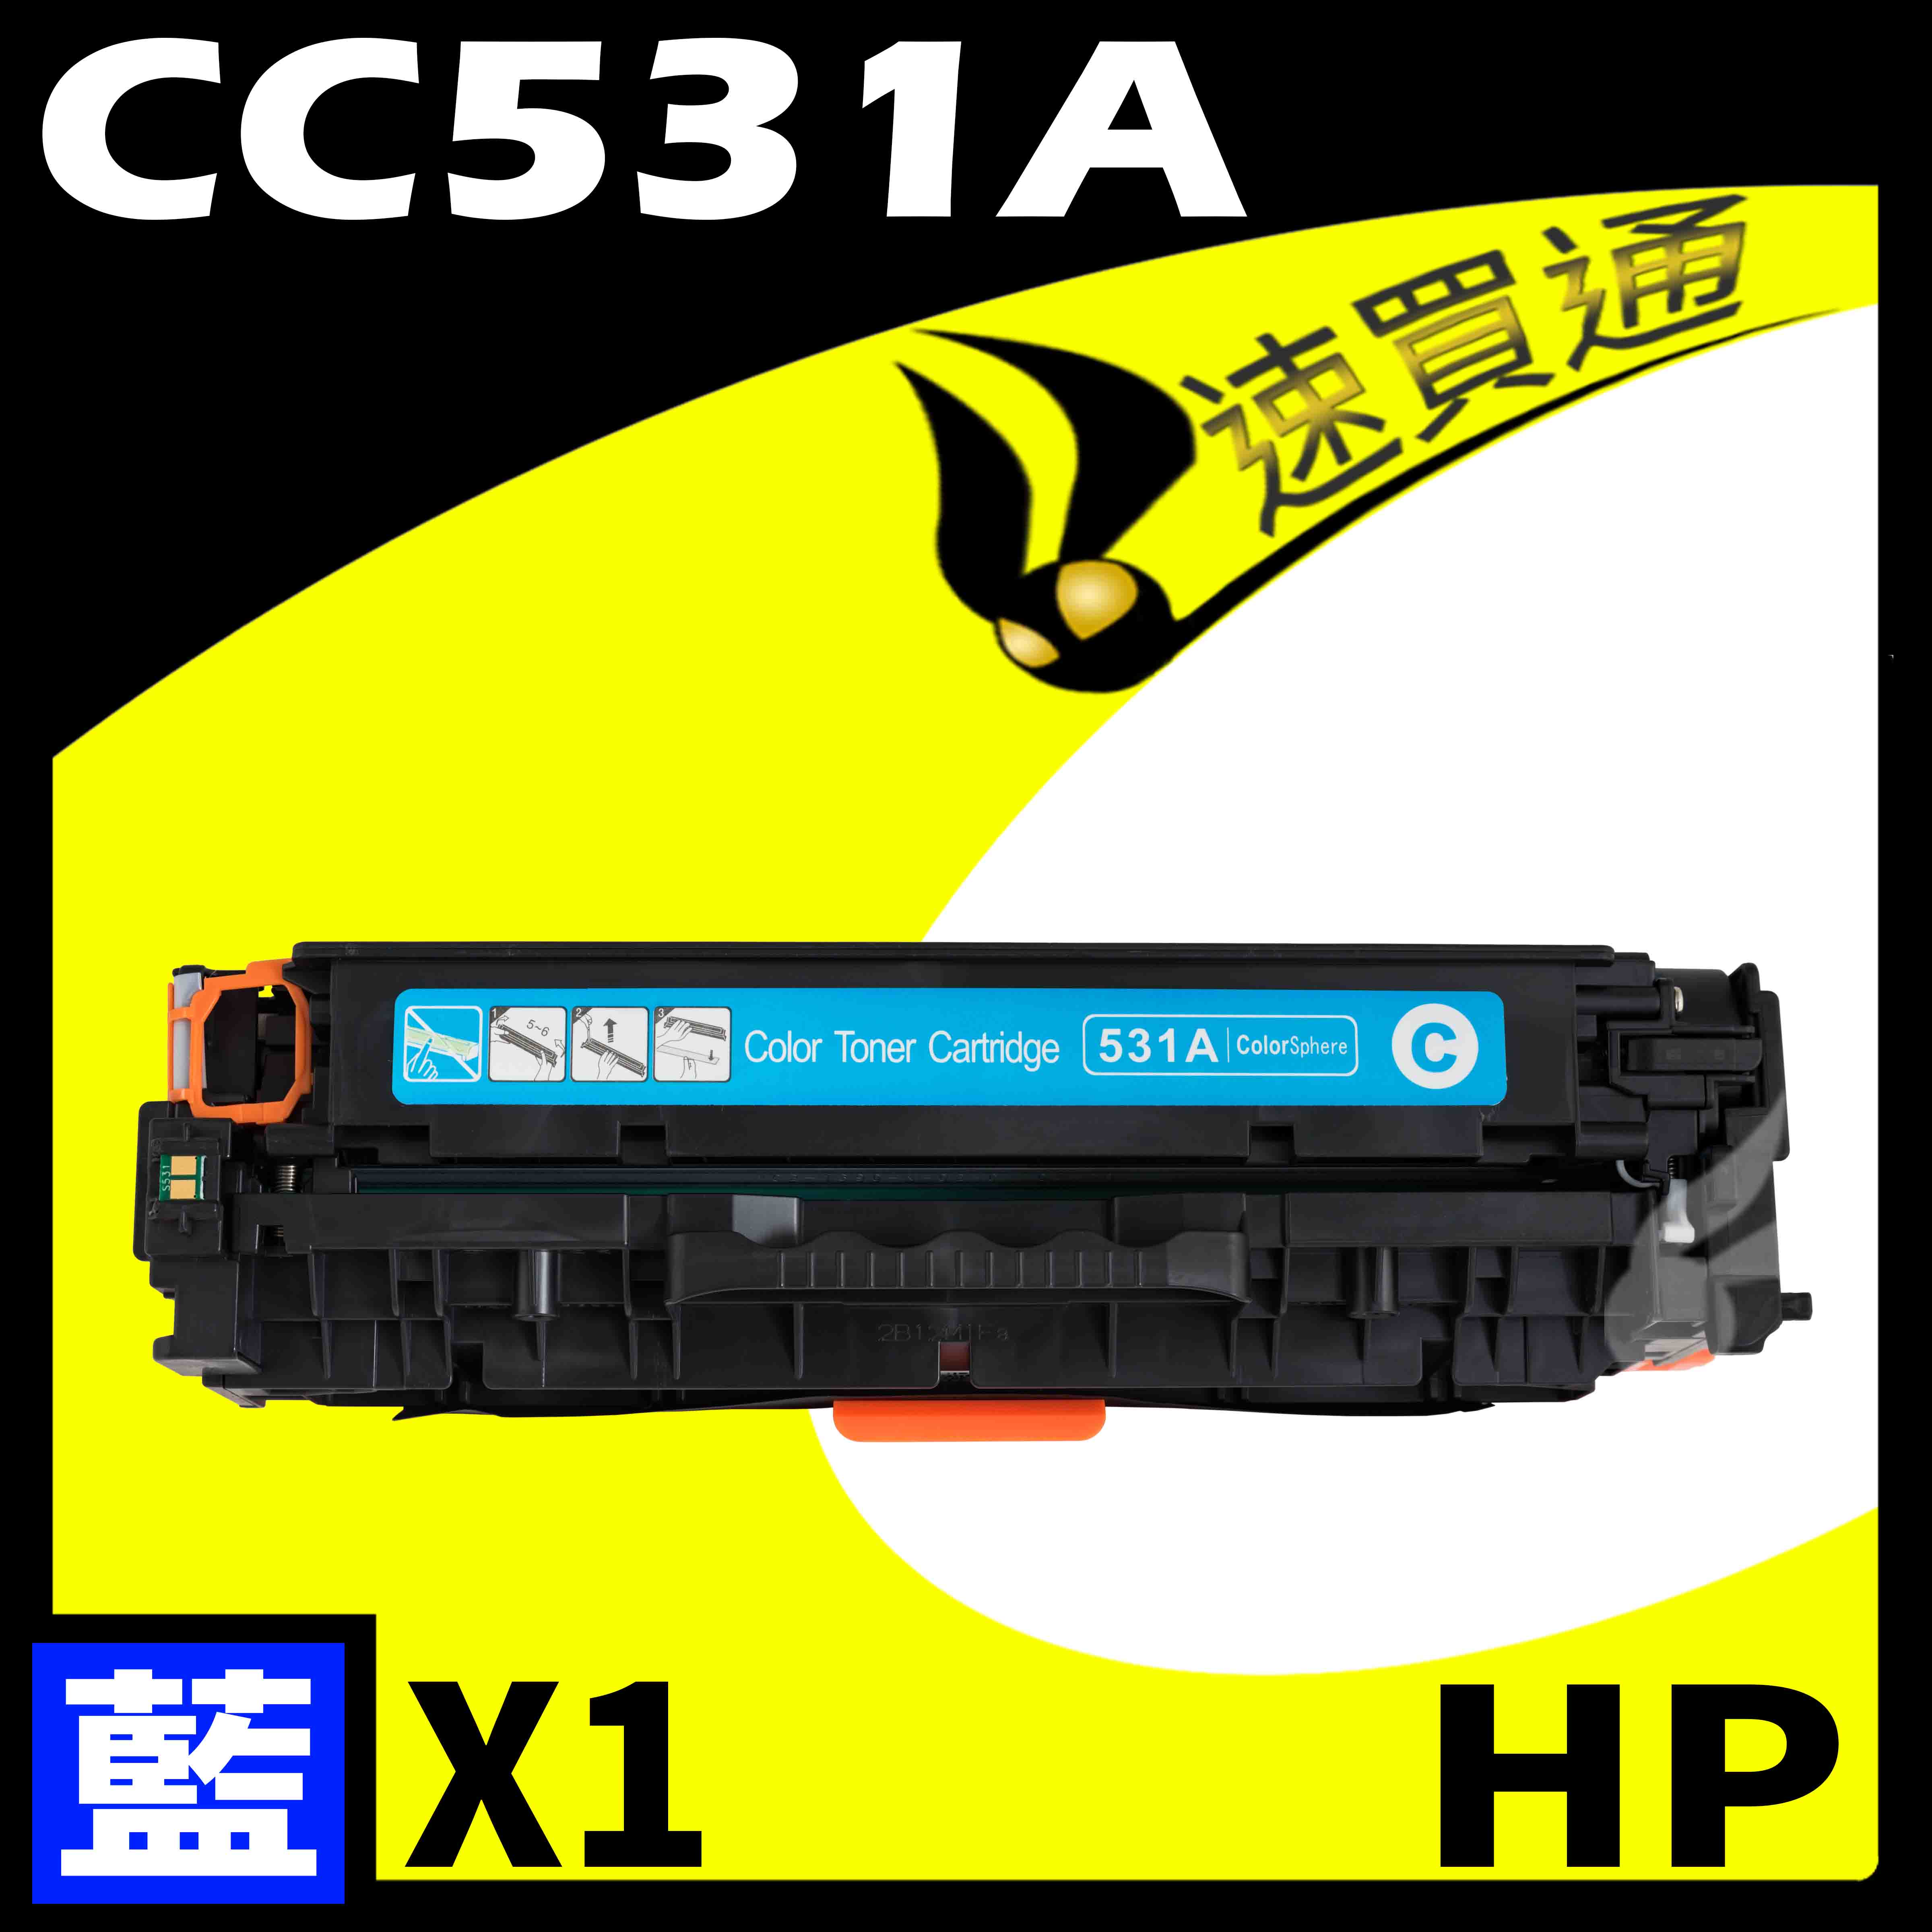 【速買通】HP CC531A 藍 相容彩色碳粉匣